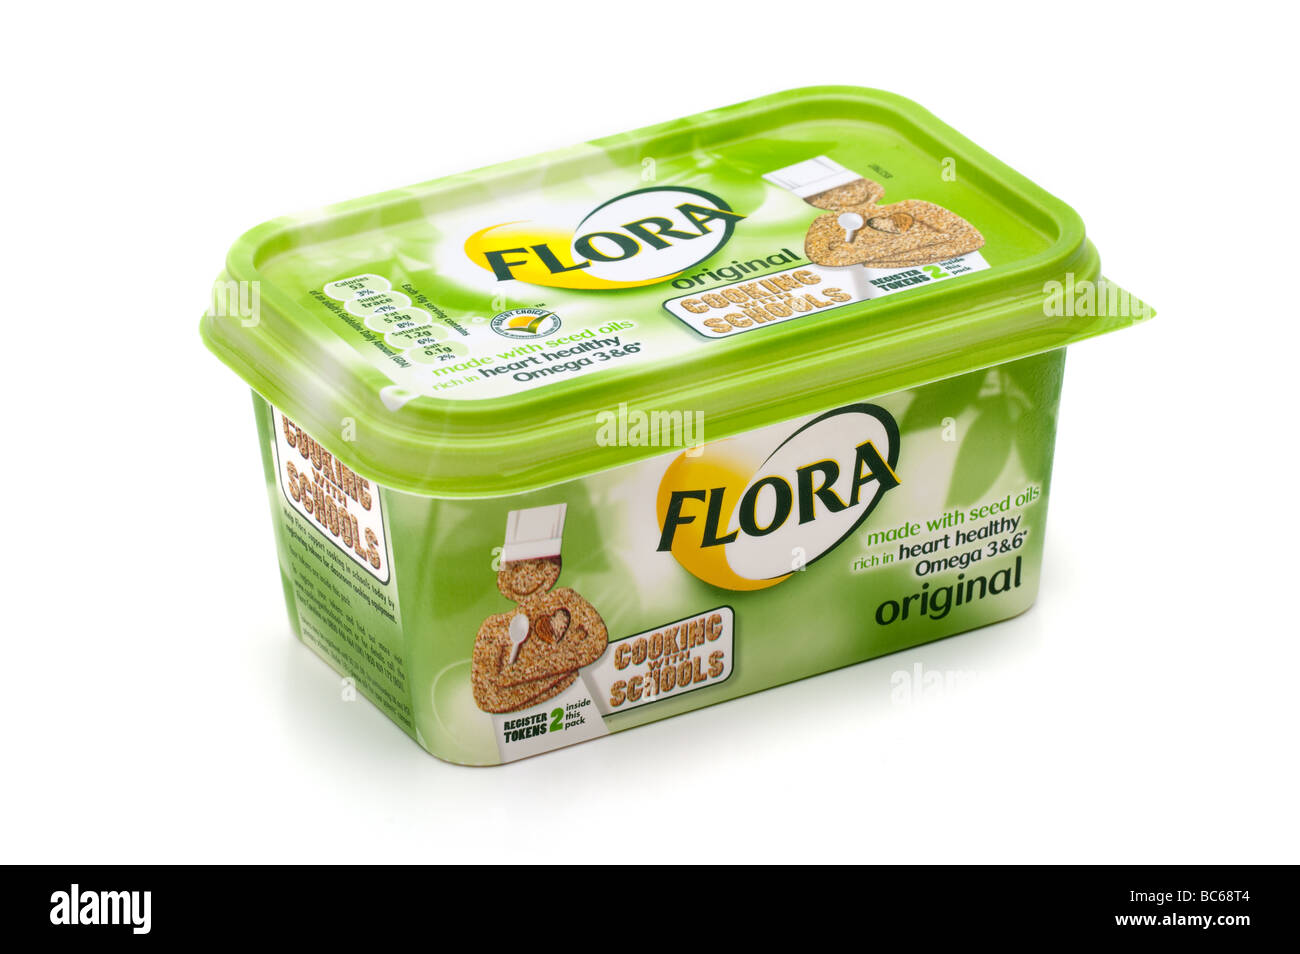 Cuve en plastique de 500 g de margarine 'Flora' Banque D'Images